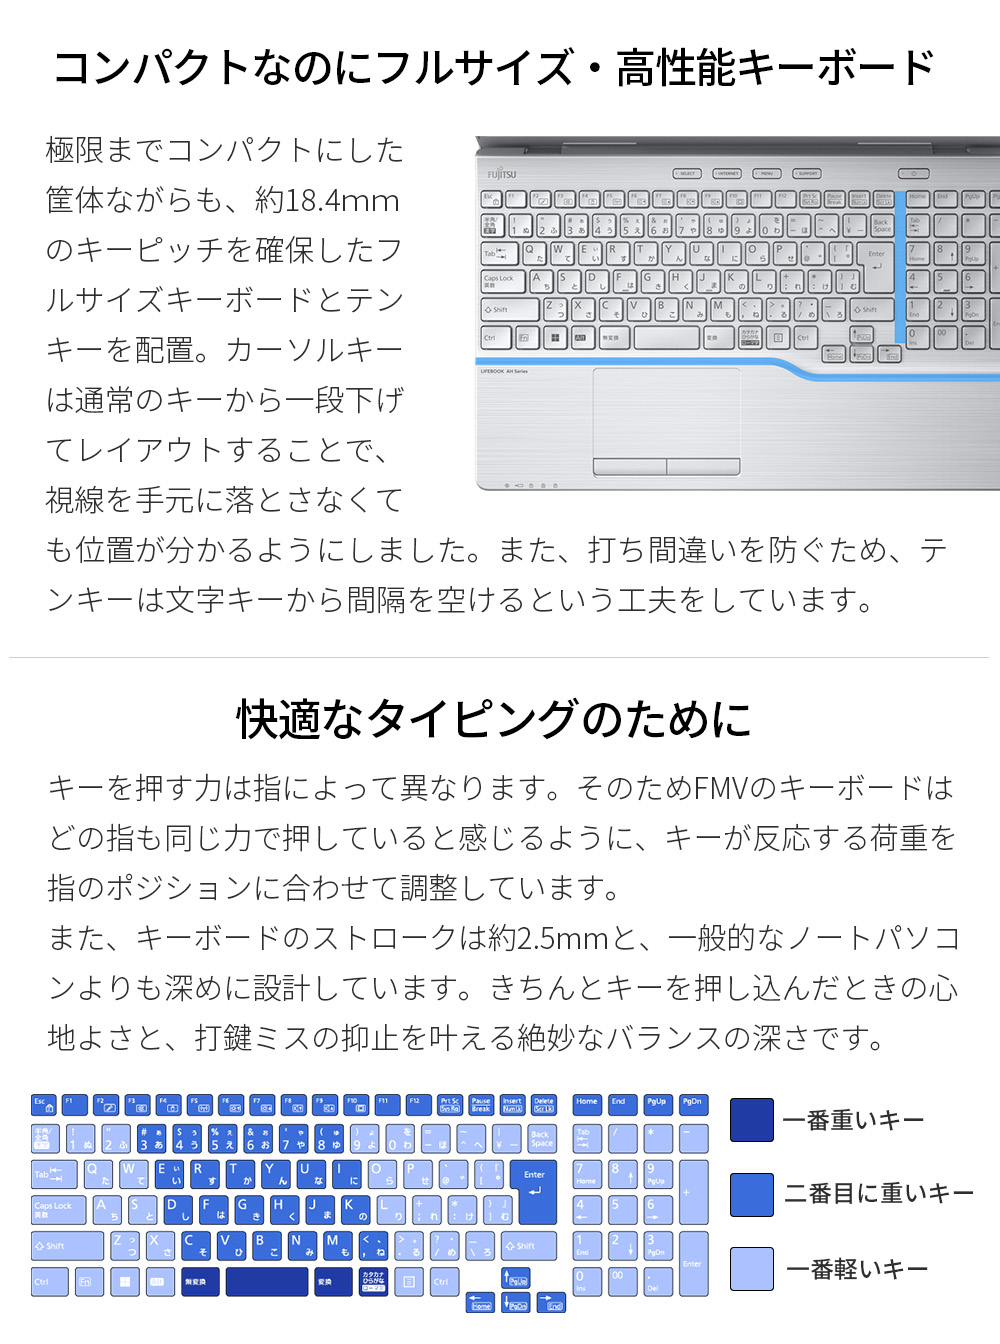 ノートパソコン 新品 富士通 LIFEBOOK AH WA3/G2 15.6型 Windows11